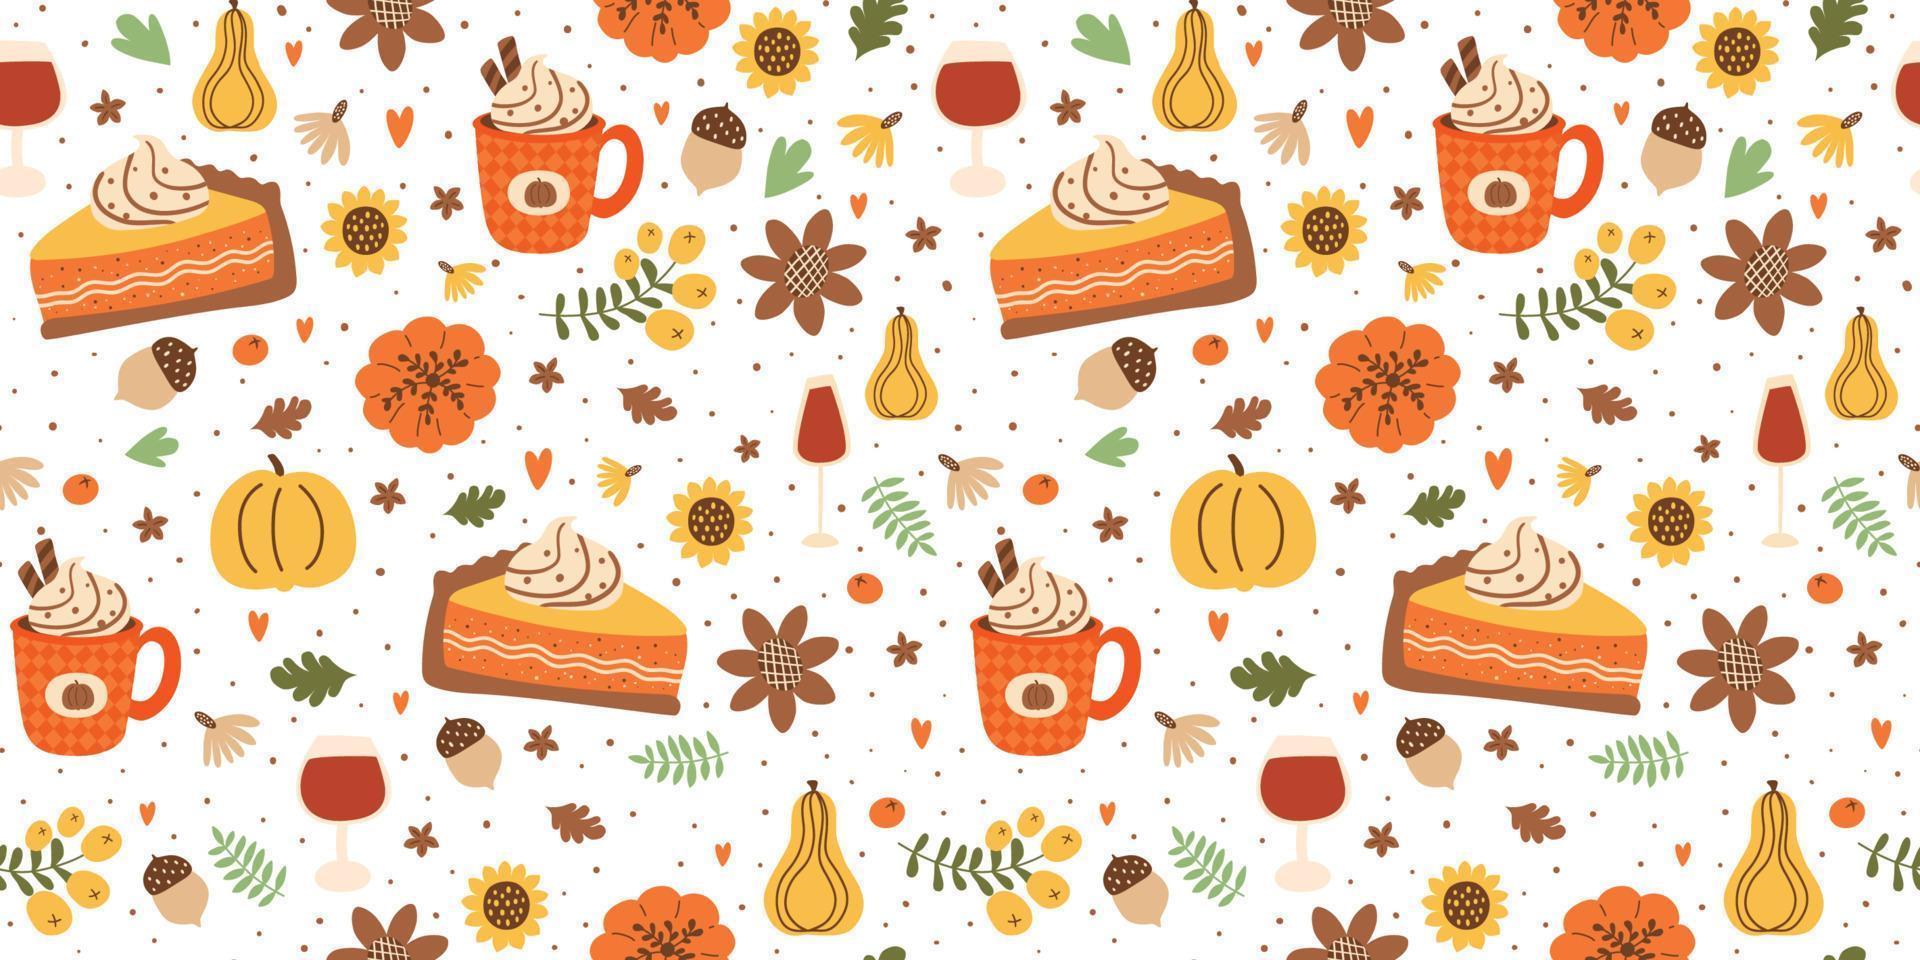 herfst pompoen taart plak en pompoen kruid latte naadloos patroon versierd vallen bladeren, bloemen, eikels, botanisch BES. vallen seizoen voedsel illustratie in vector is Super goed voor dankzegging dag.